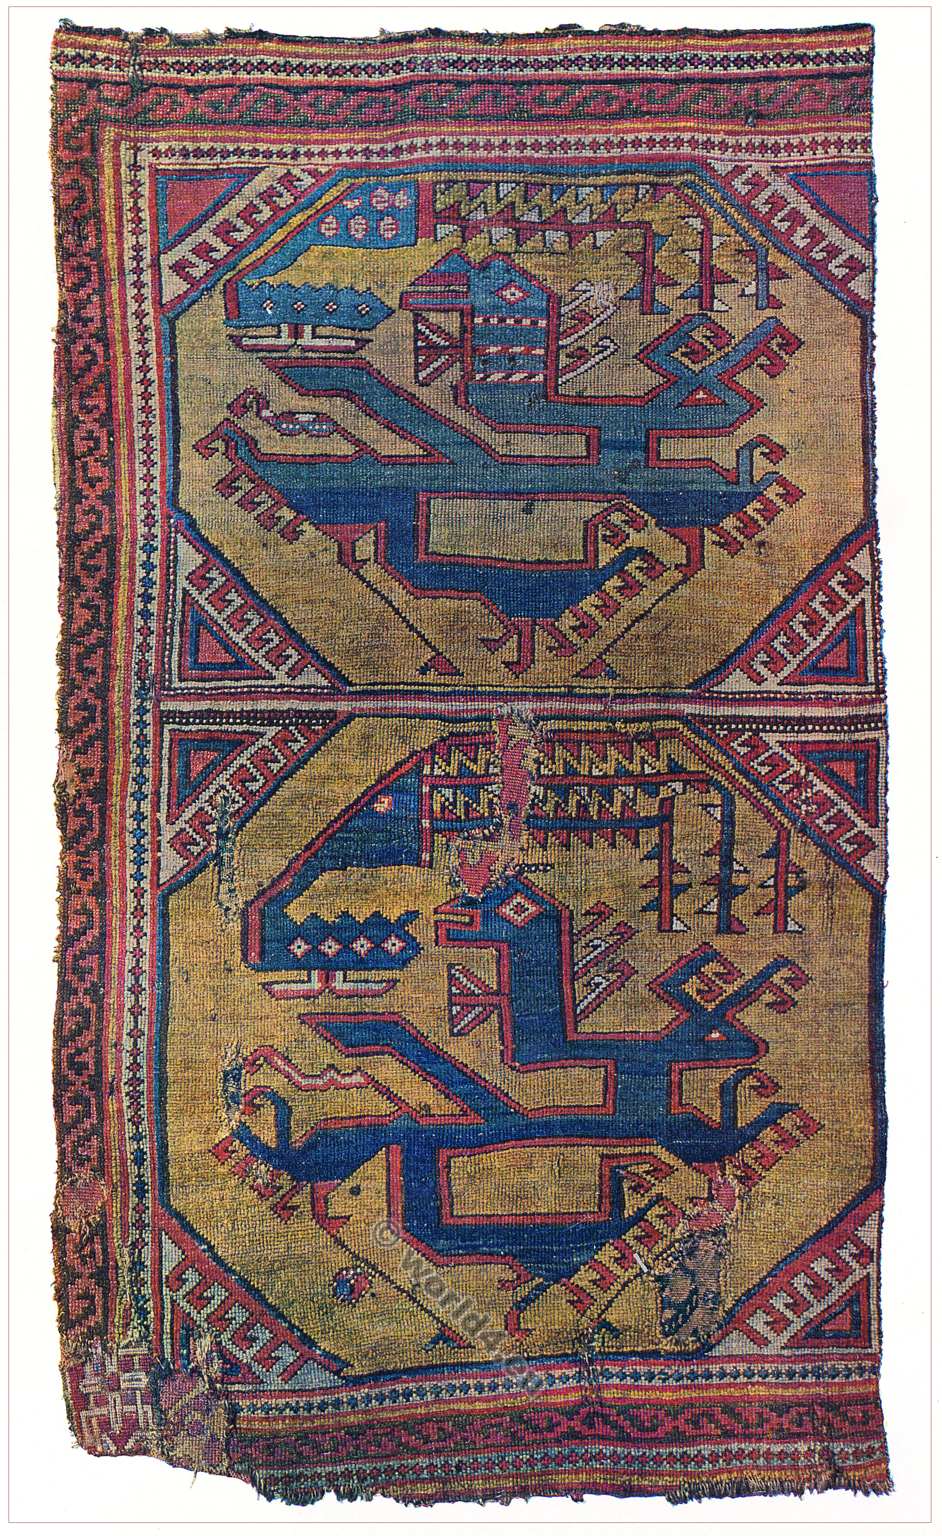 Oriental carpet. 15th century. Caucasus. Asia Minor. Phoenix